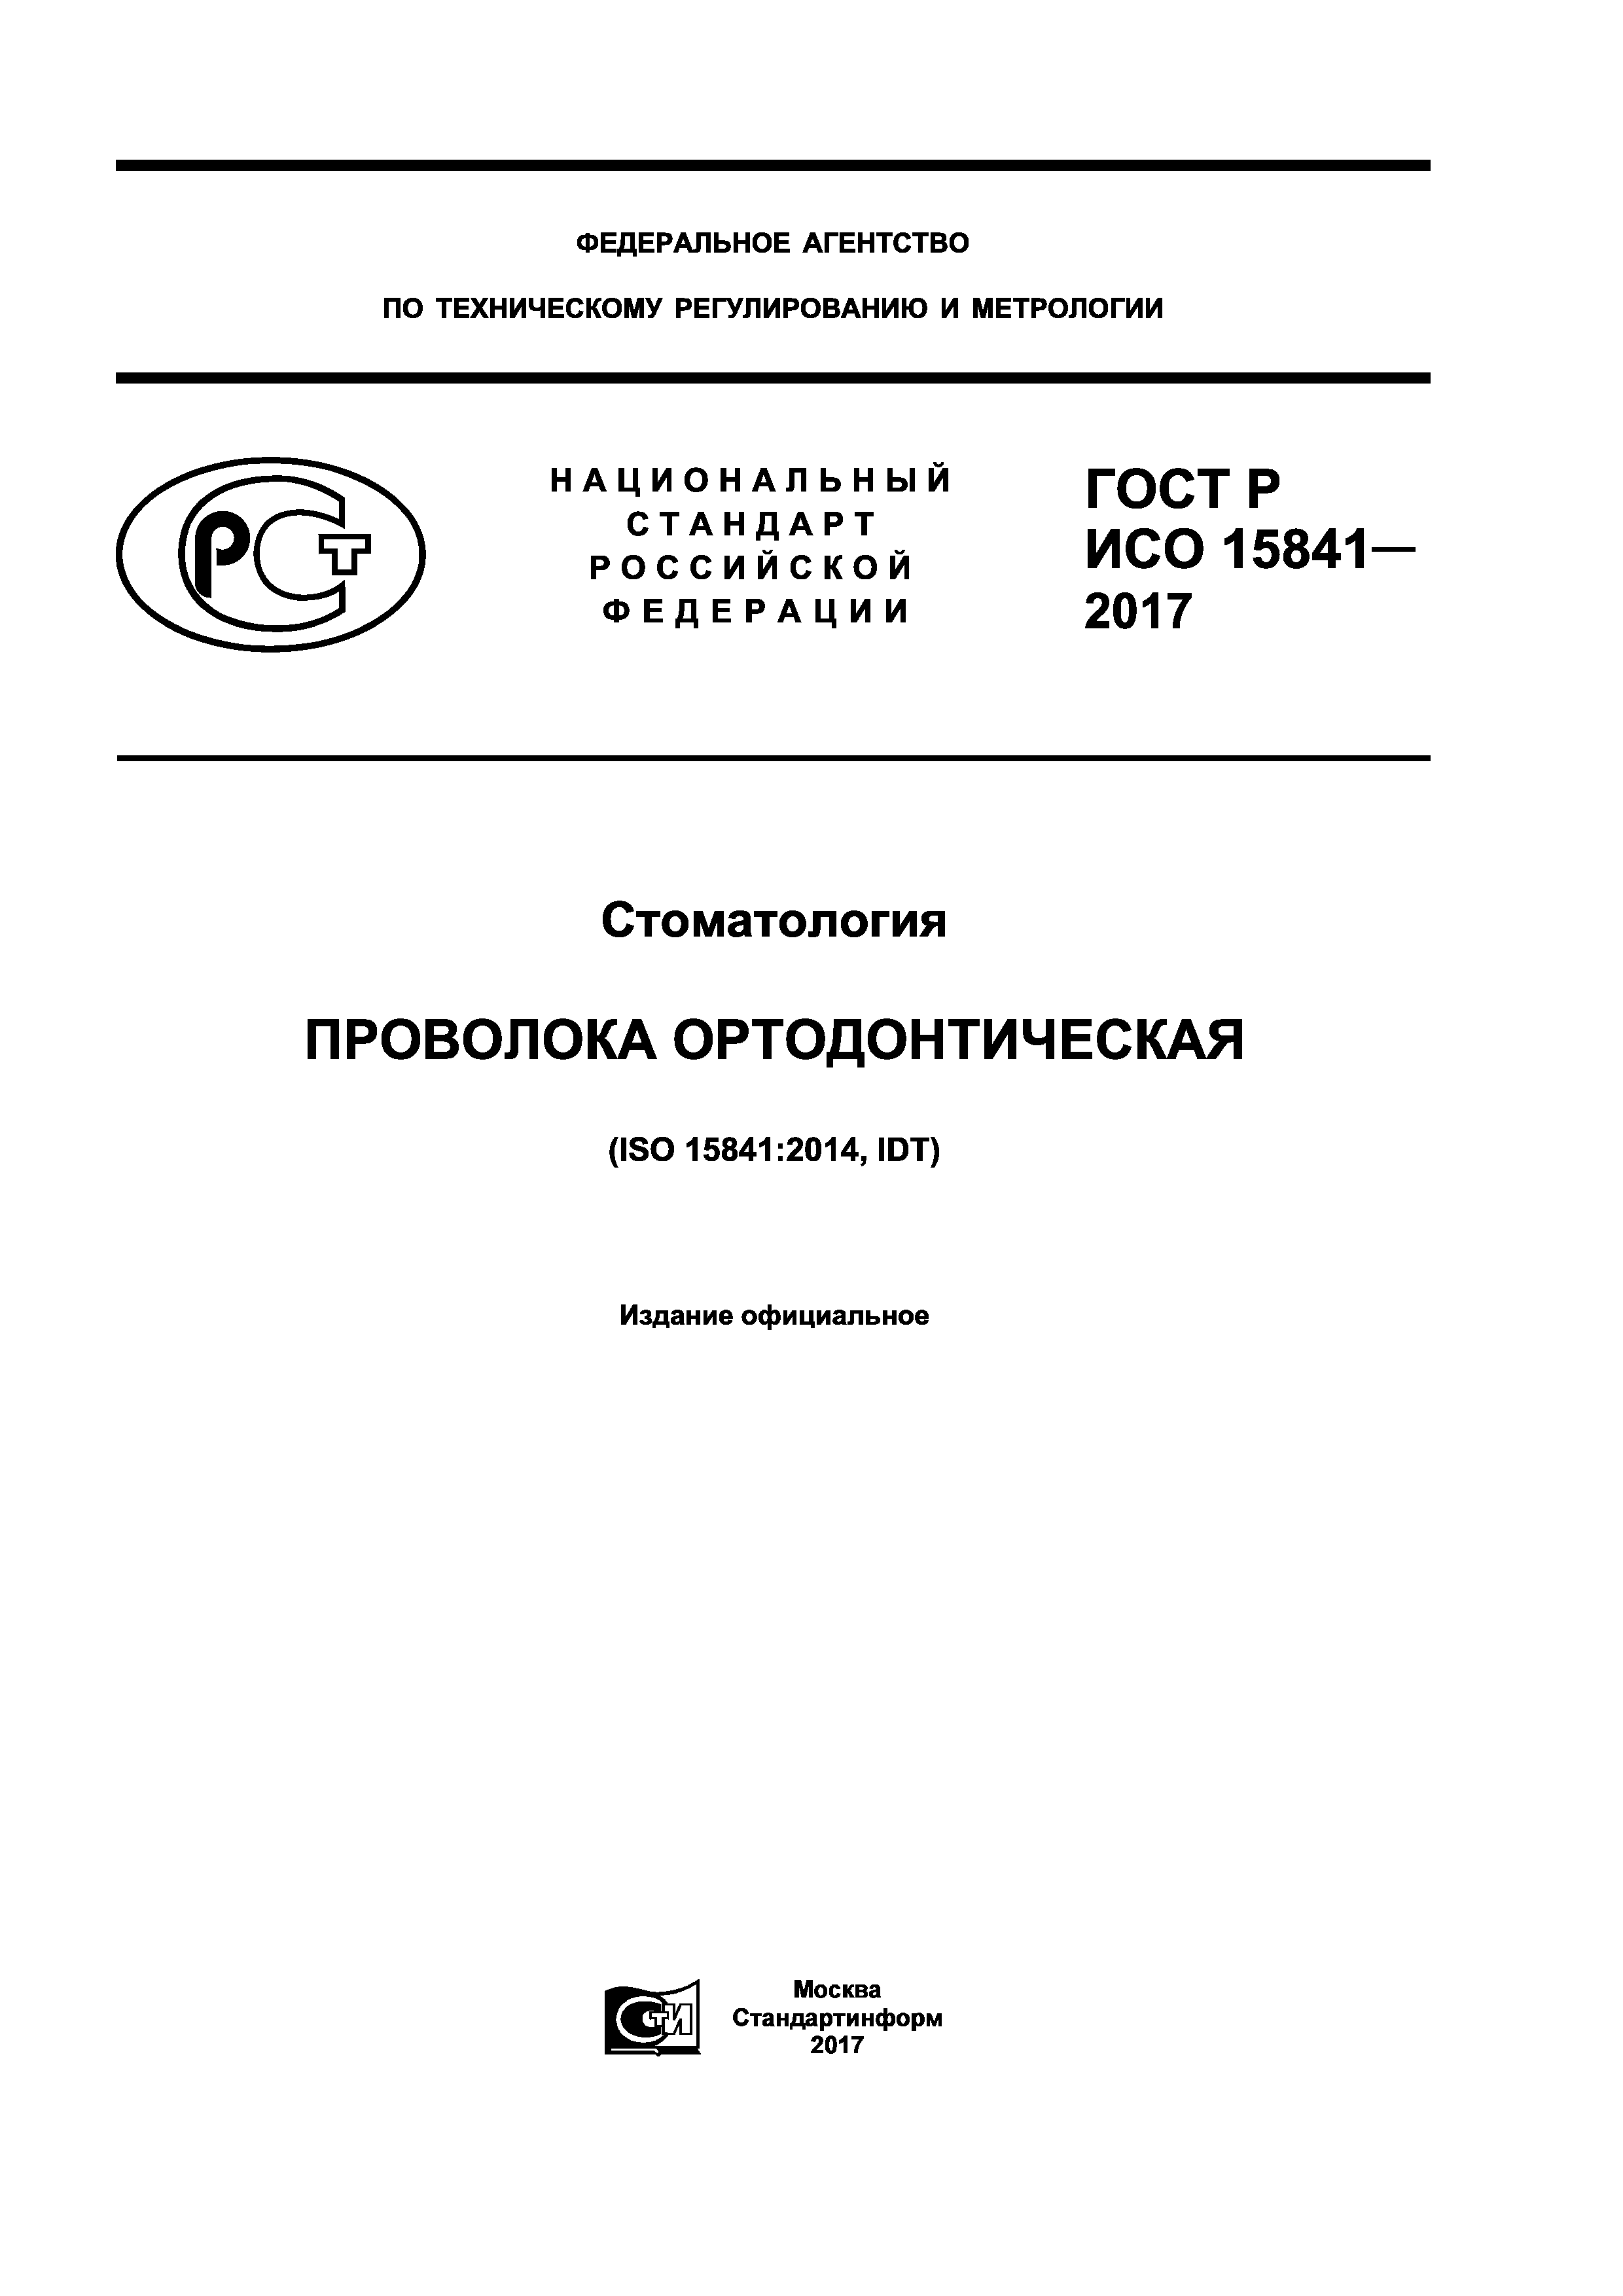 ГОСТ Р ИСО 15841-2017